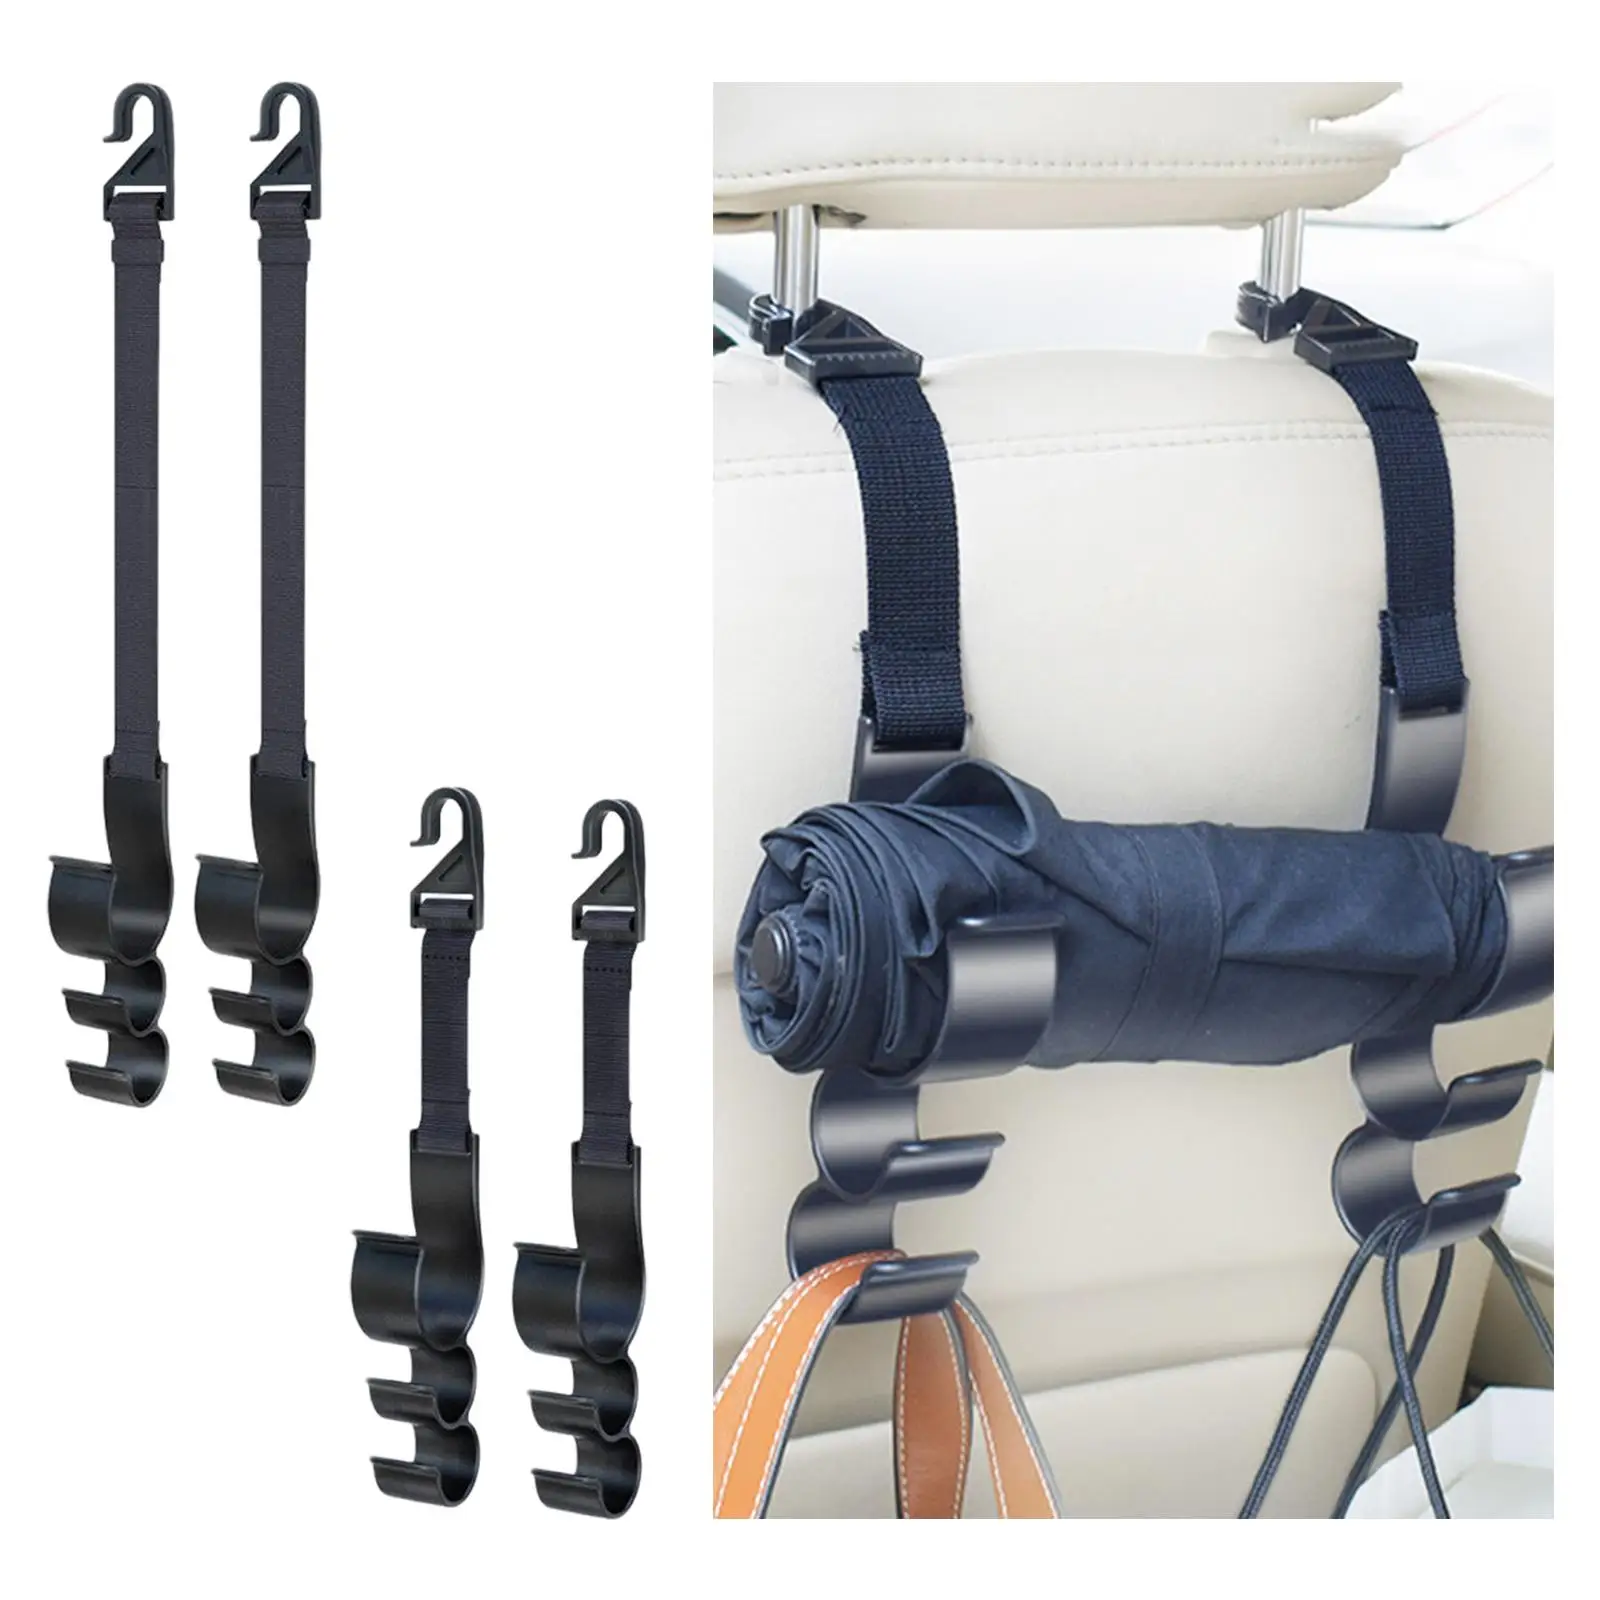 Headrest Hooks for Car Durable Headrest Hook Holder fit for Handbag